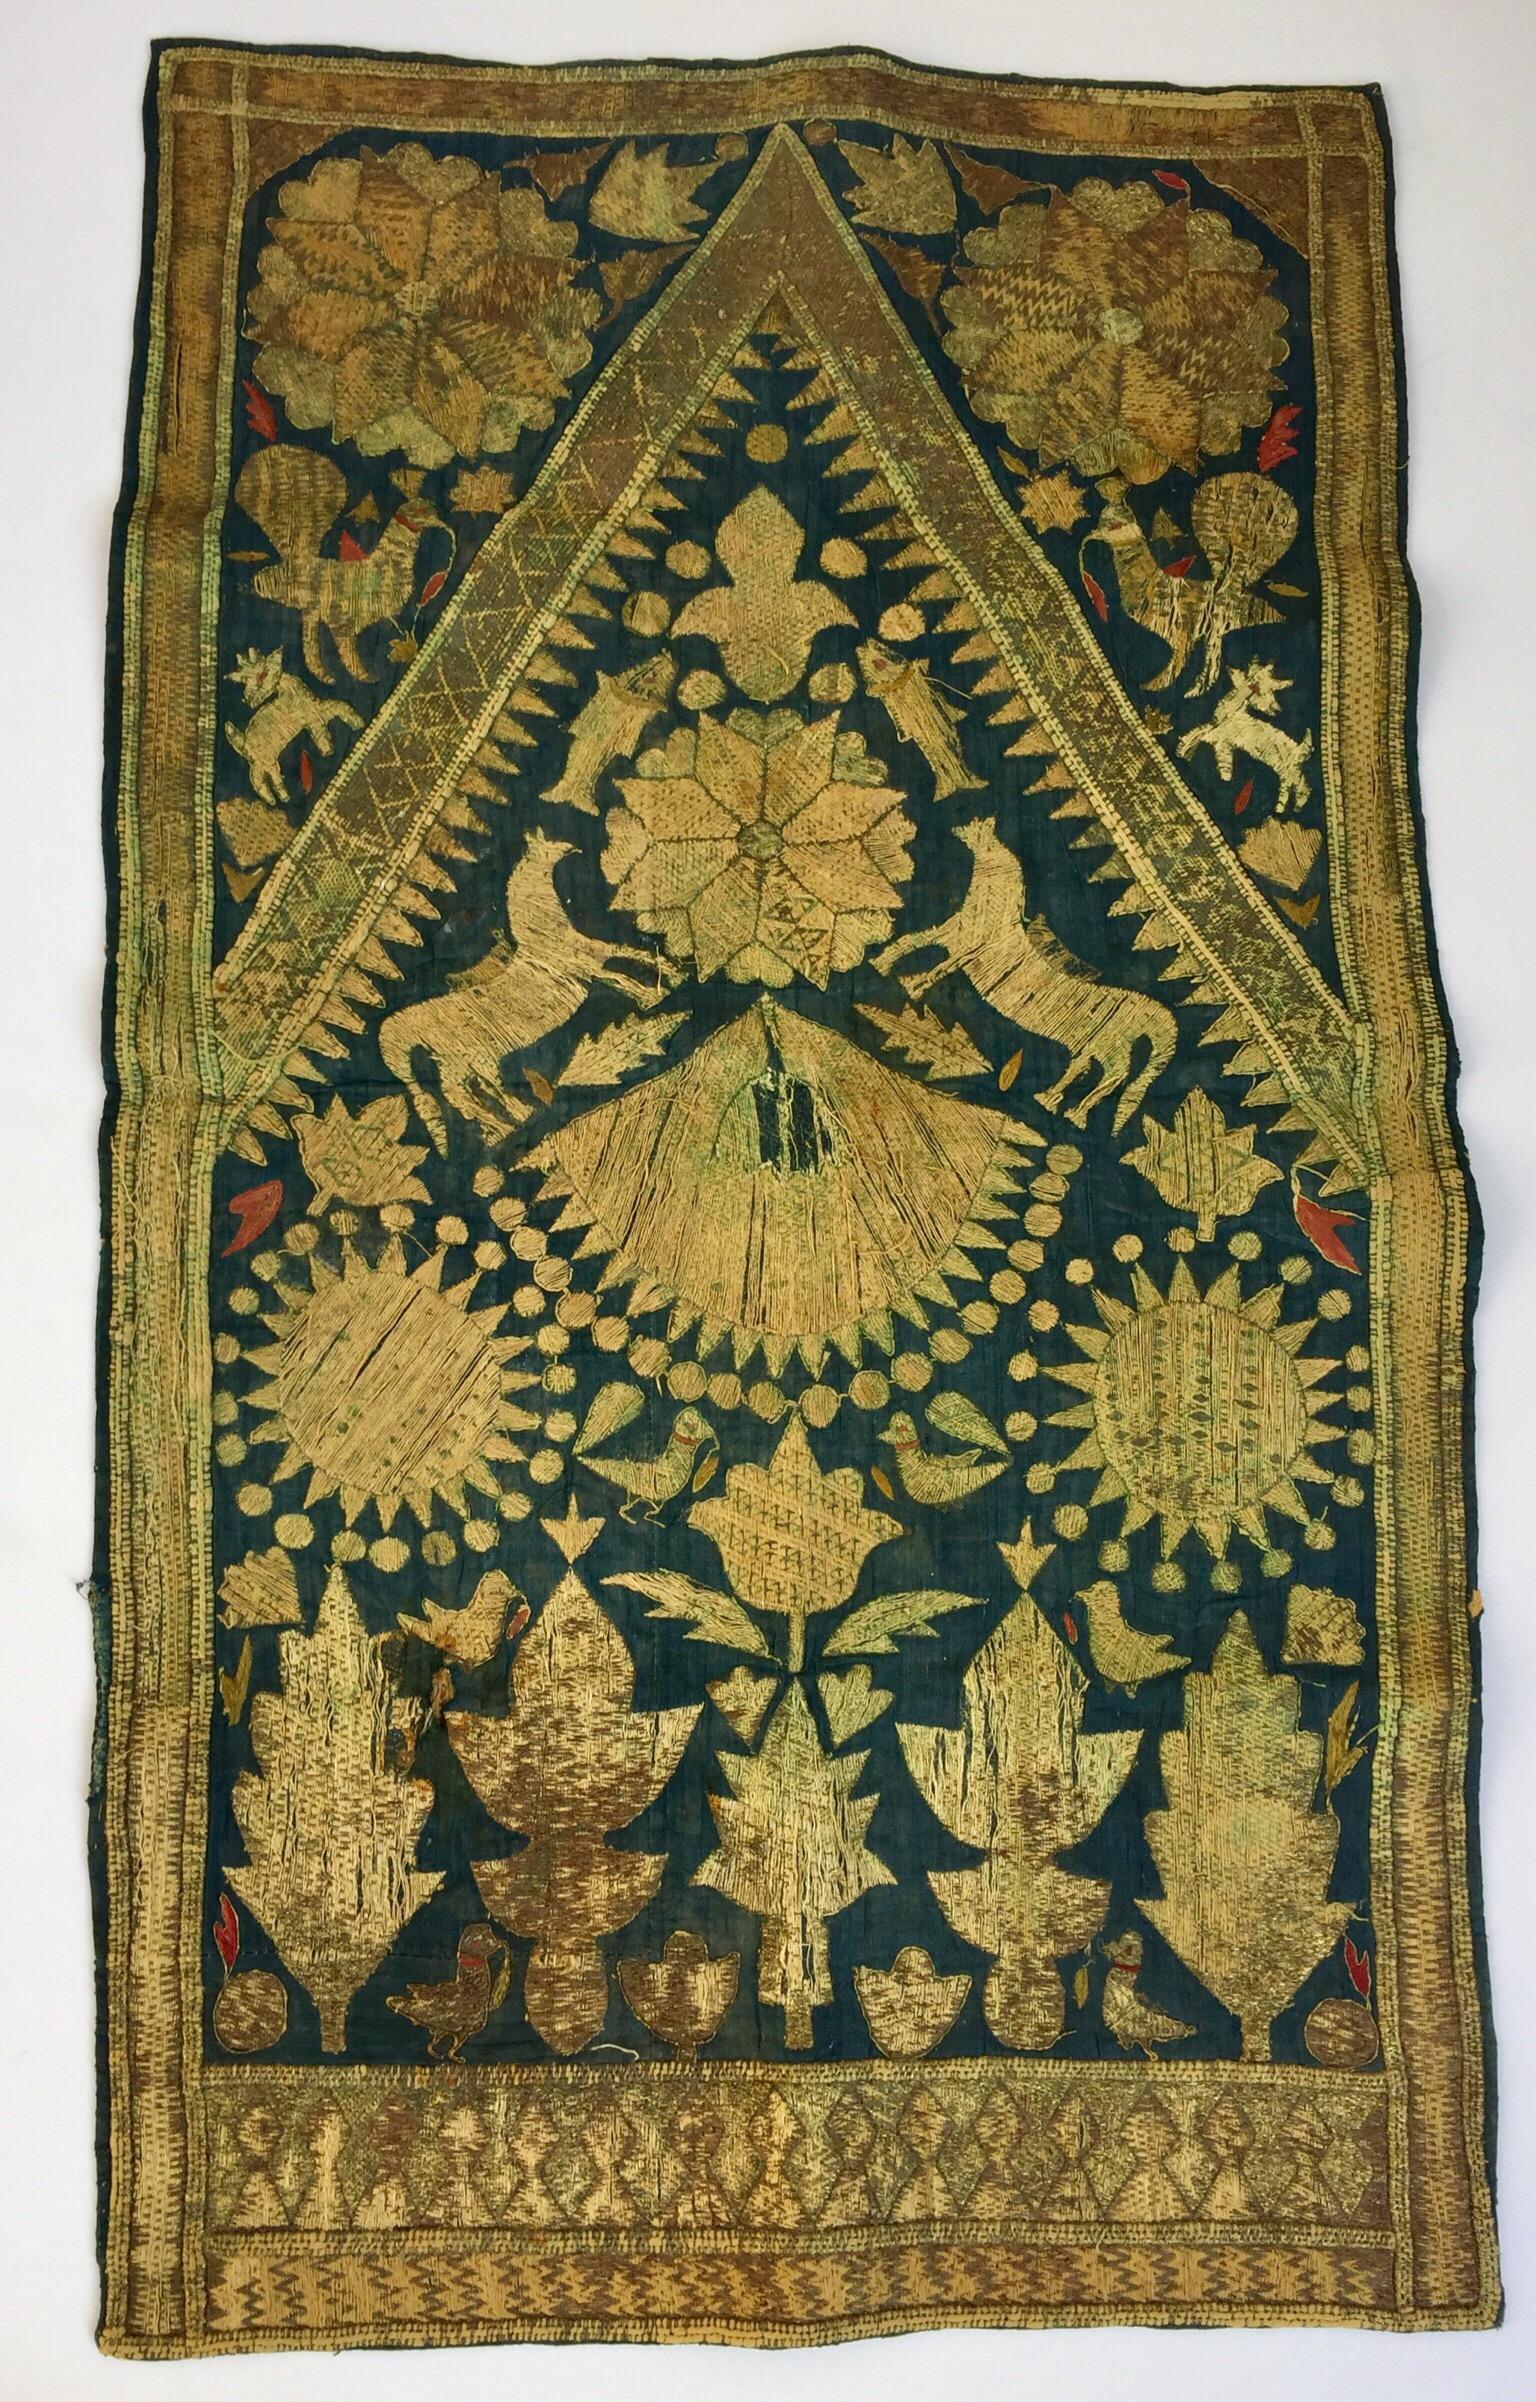 19th Century Moorish Islamic Ottoman Empire Textile Metallic Embroidered 8